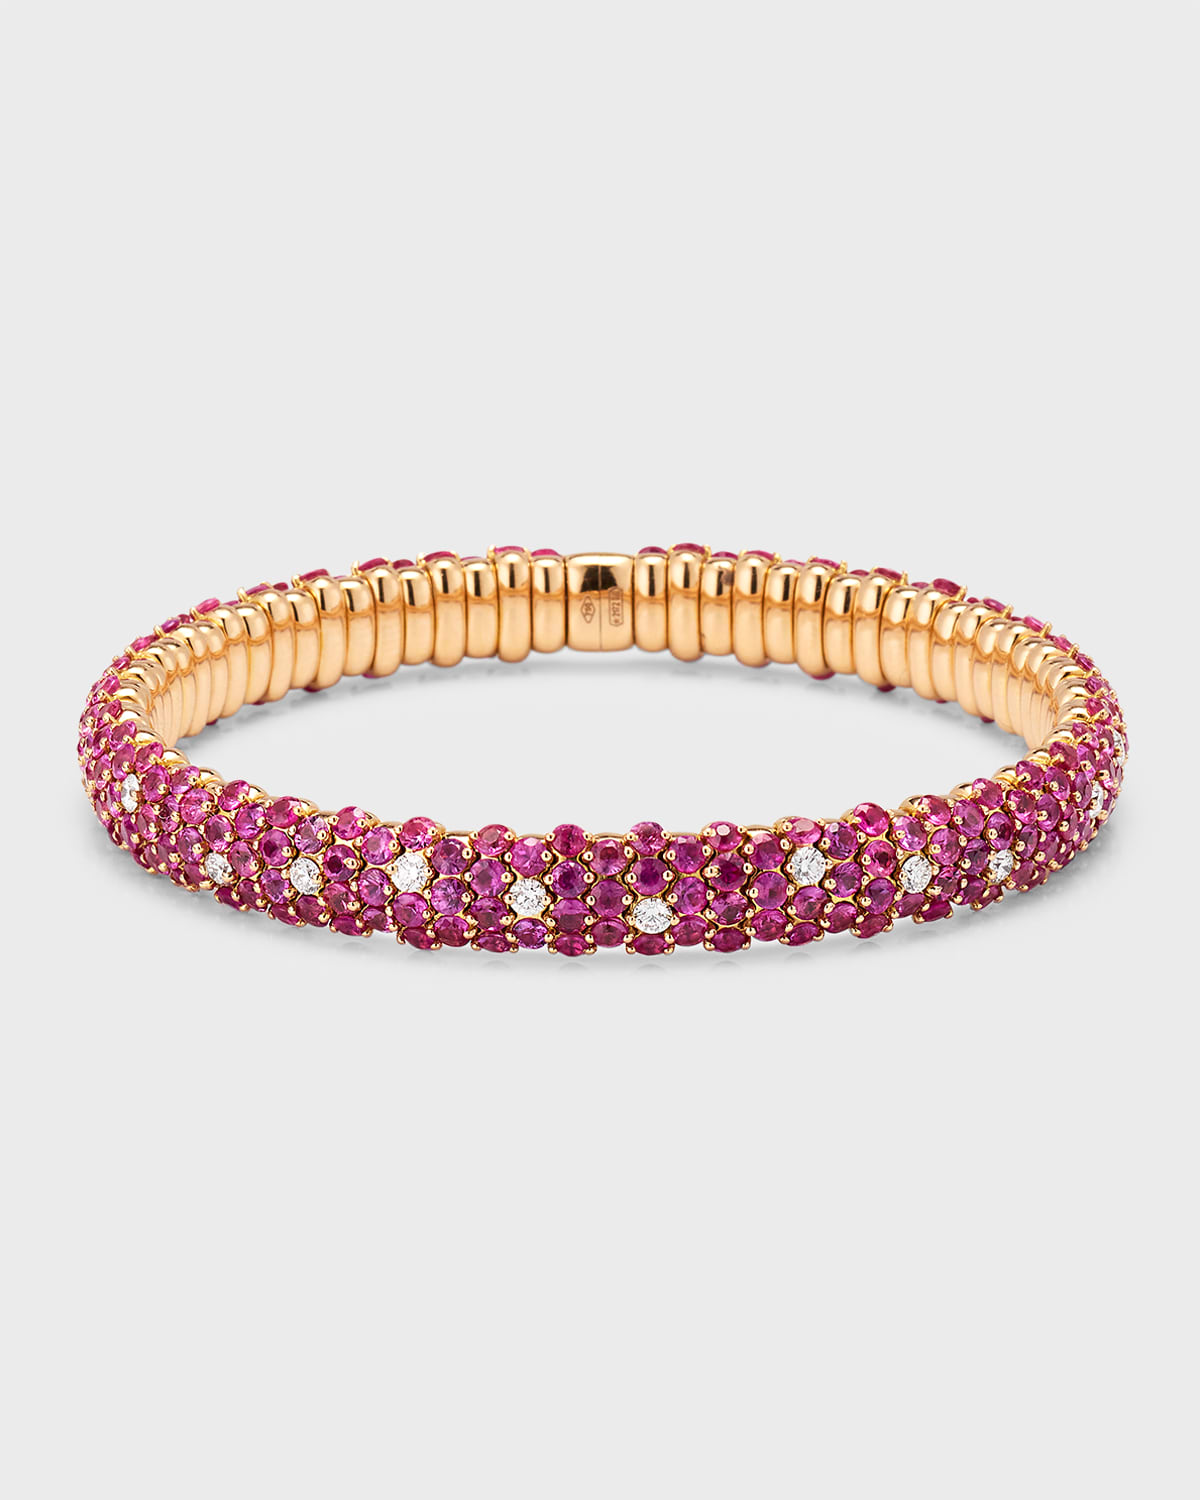 Zydo 18k Rose Gold Pink Sapphire And Diamond Bracelet